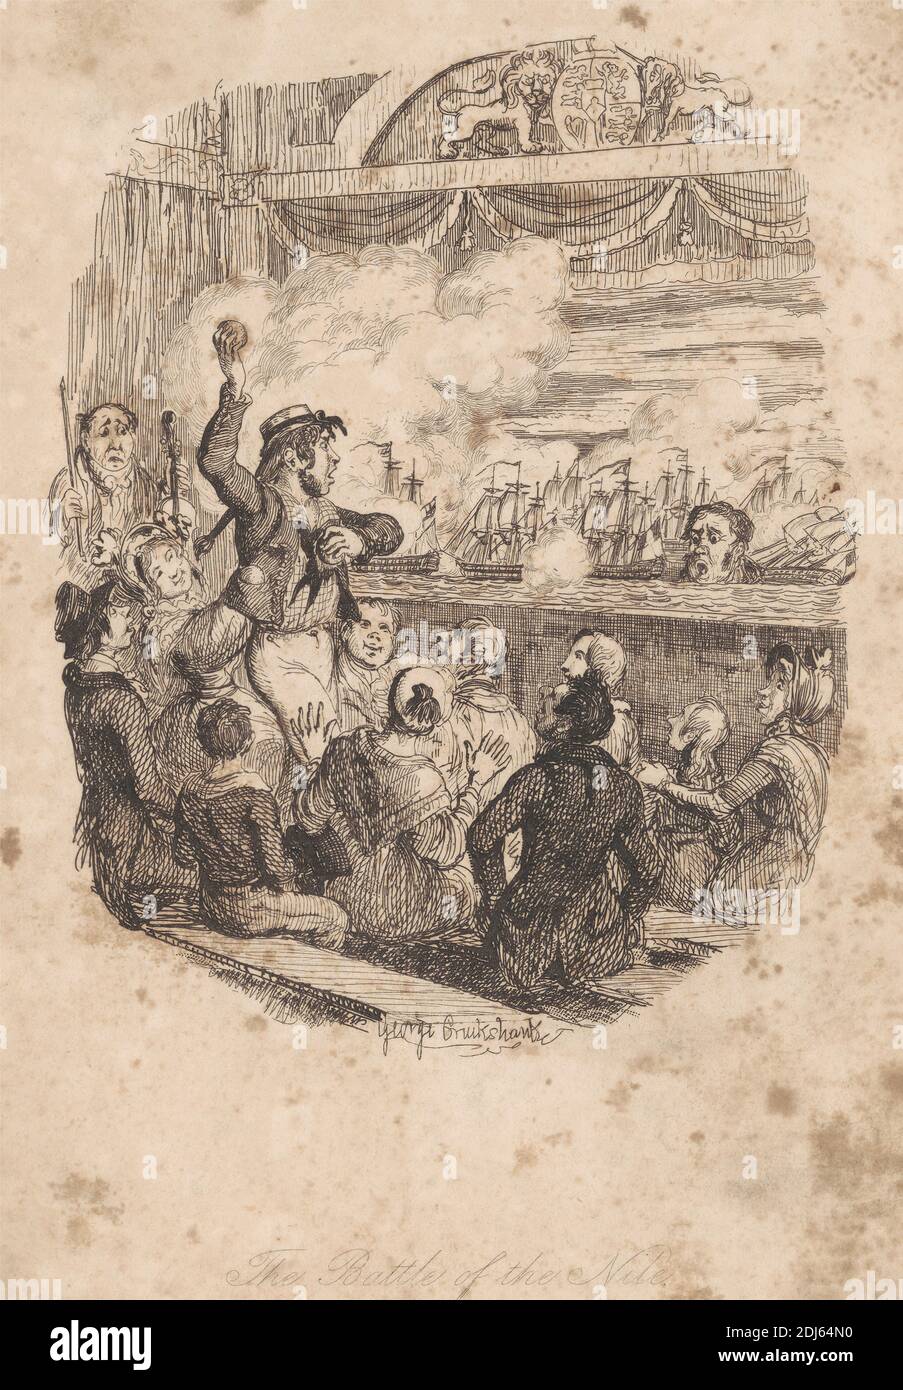 The Battle of the Nile, impresión hecha por George Cruikshank, 1792–1878, británico, sin fecha, grabado en papel de move de color crema, de textura media y ligeramente texturizada Foto de stock